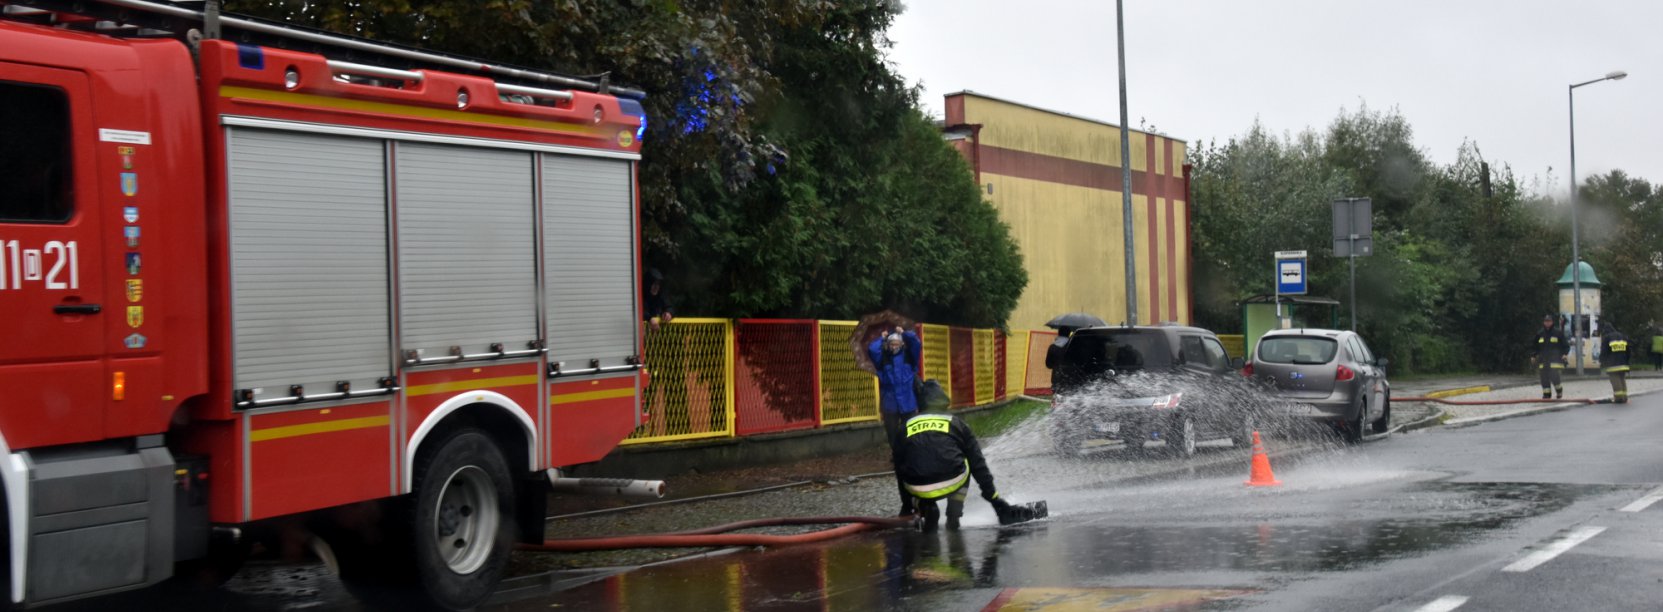 Strażakpracujący przy wypompowywaniu wody ze studzienki 